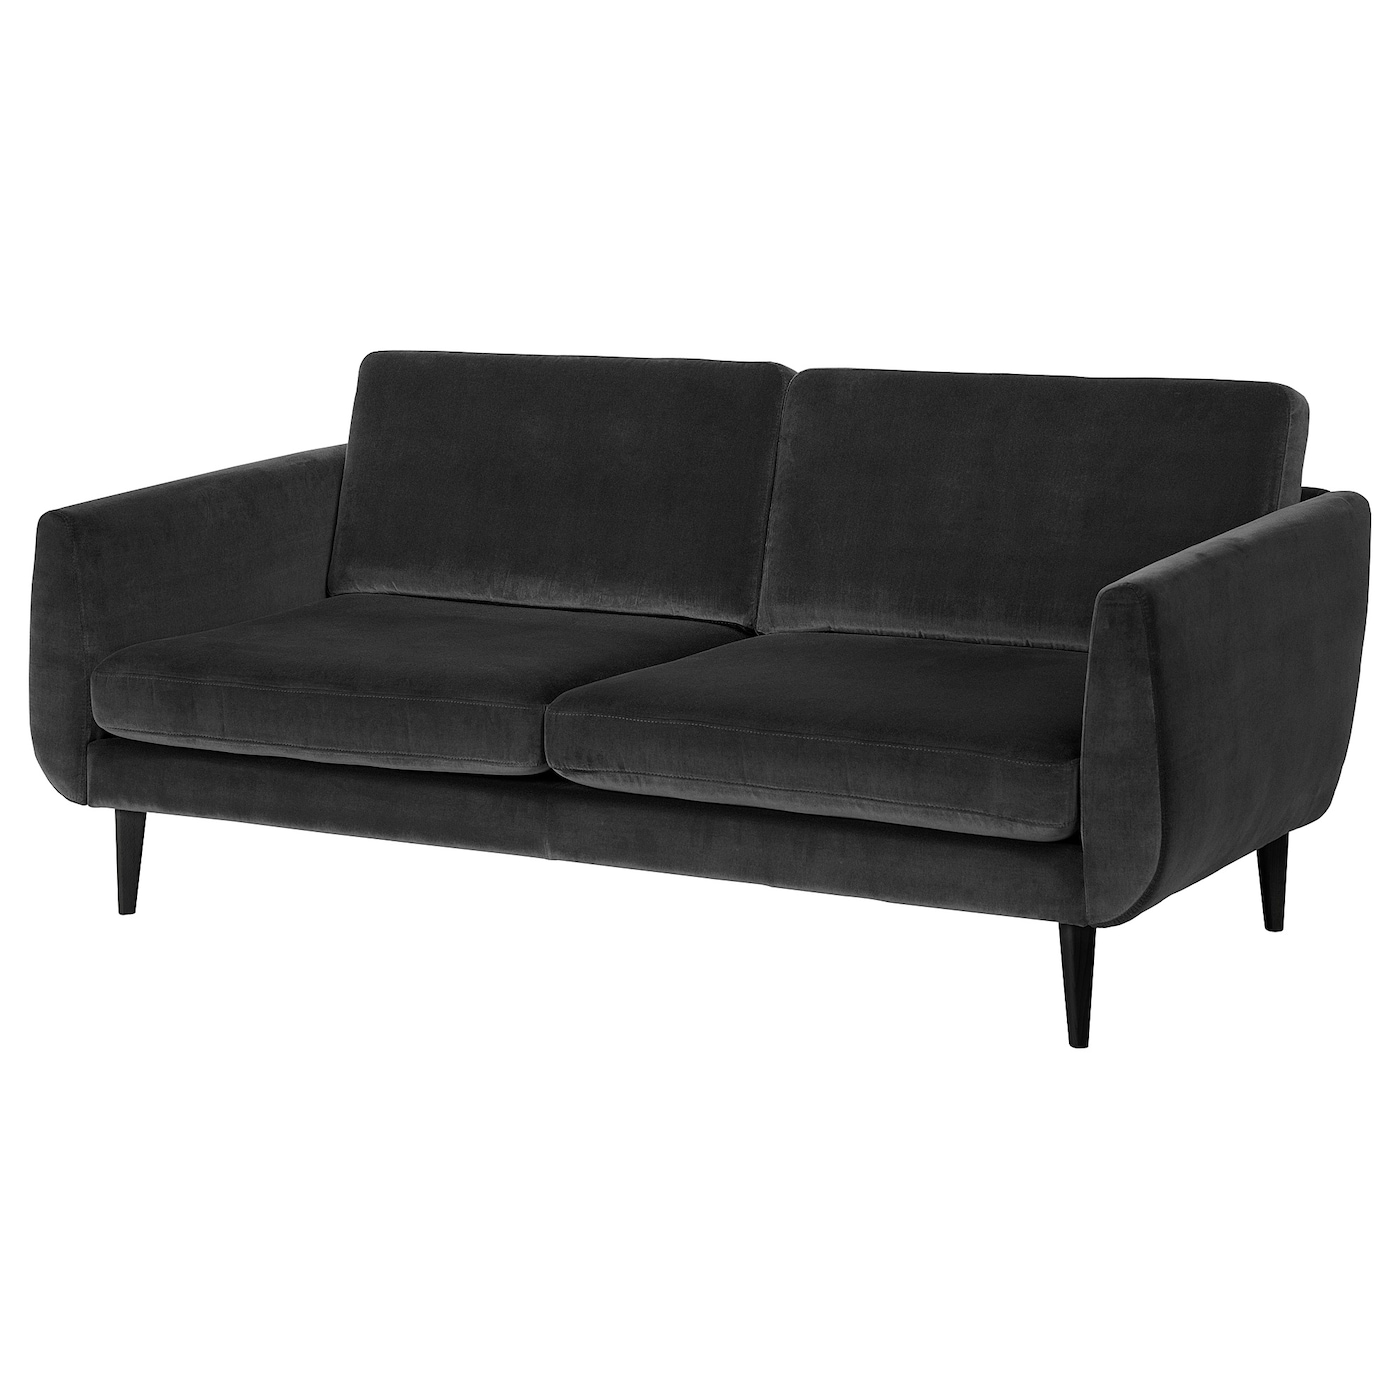 СМЕДСТОРП 3-местный диван, Дьюпарп темно-серый/черный SMEDSTORP IKEA диван трансформер ладья майами серый с цветными подушками